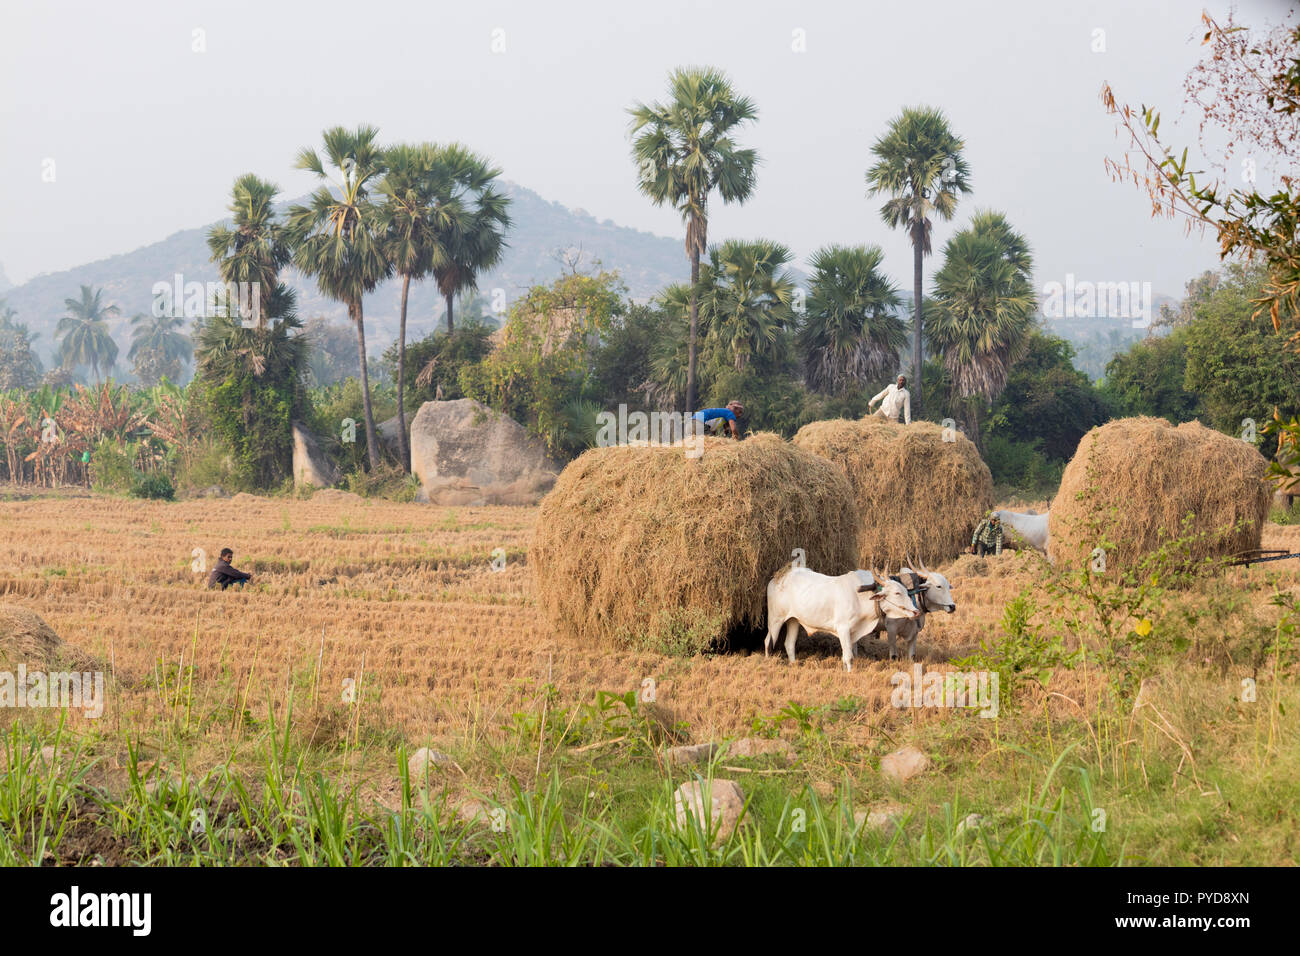 Los agricultores indios que trabajan en su agricultura feild, temprano en la mañana en anegundi Foto de stock